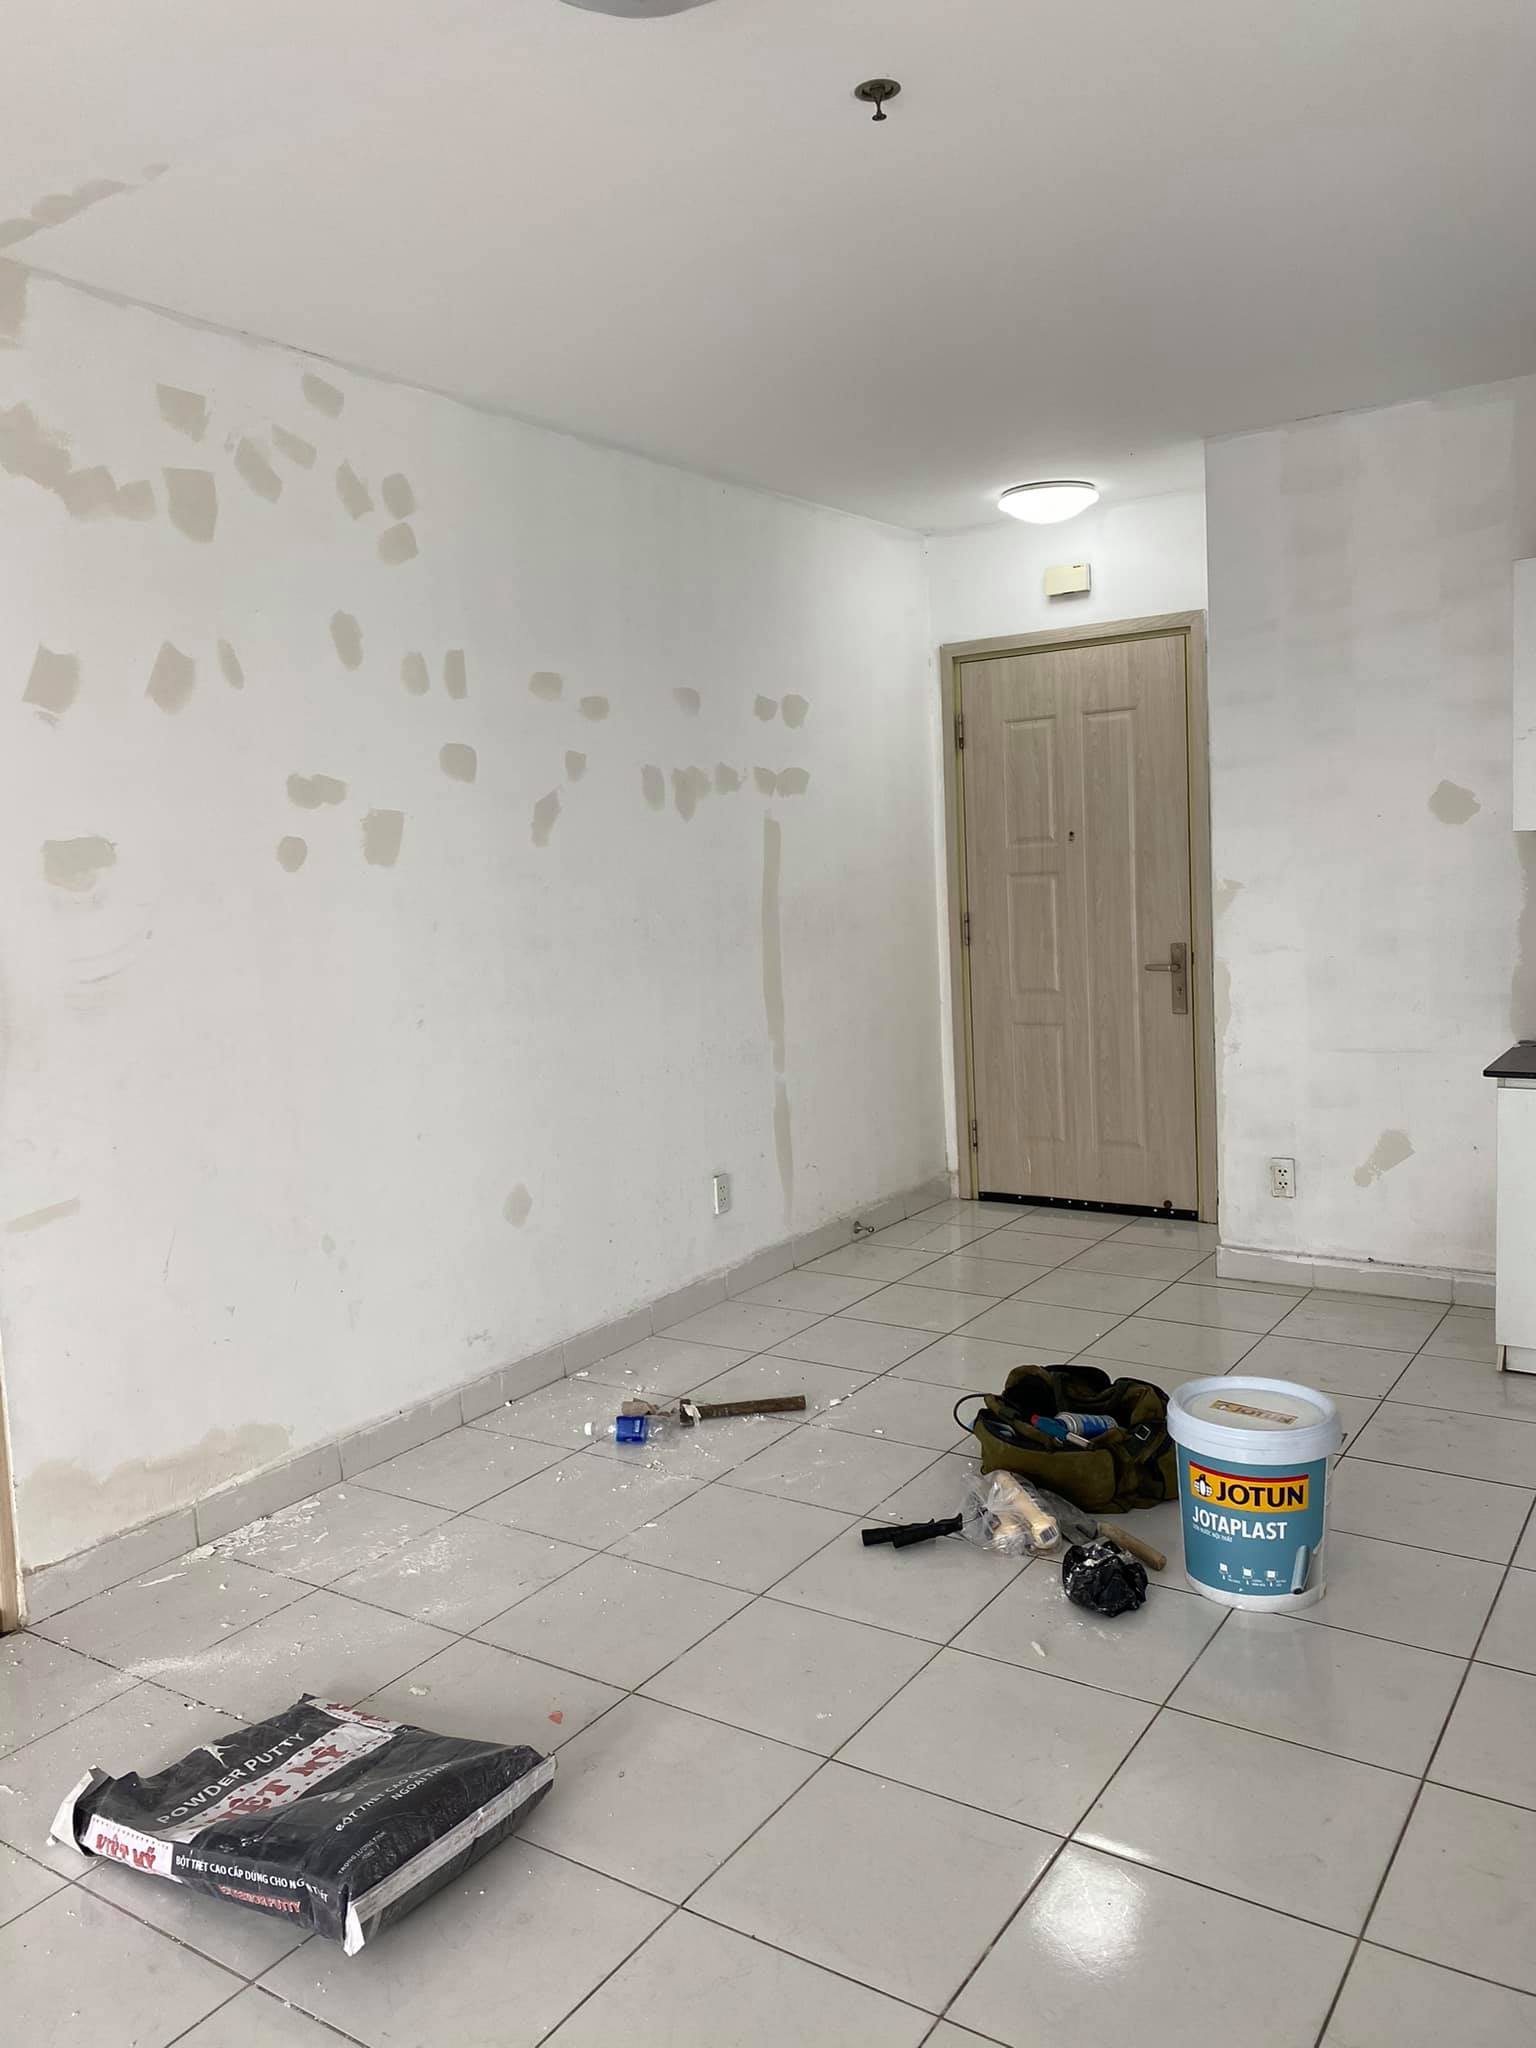 nhận sơn sửa lại căn hộ chung cư tại thủ đức